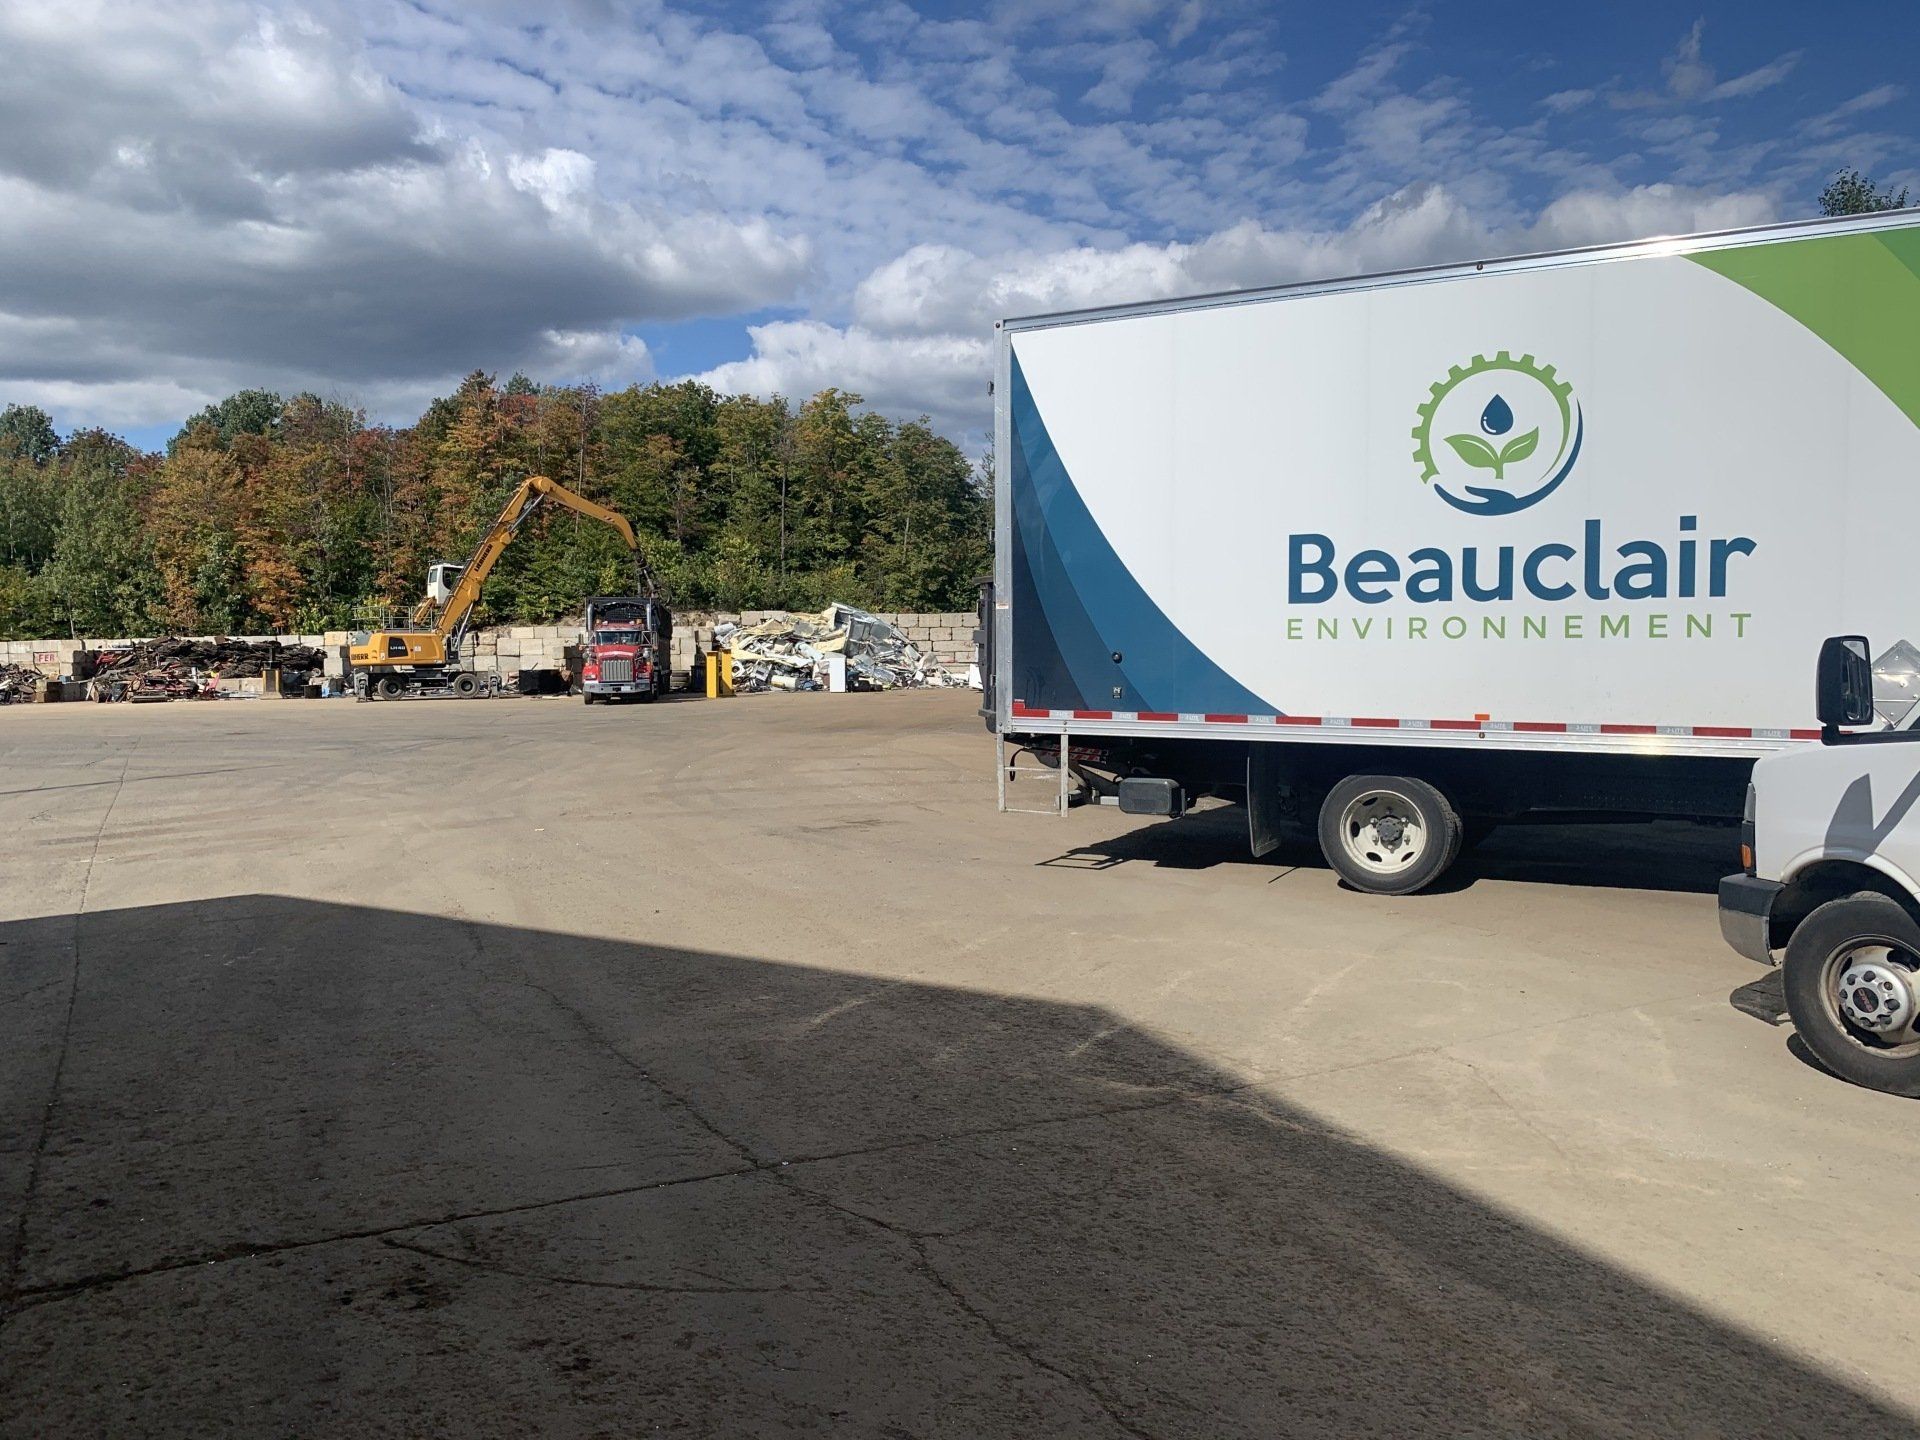 Un camion Beauclair est garé dans un parking.